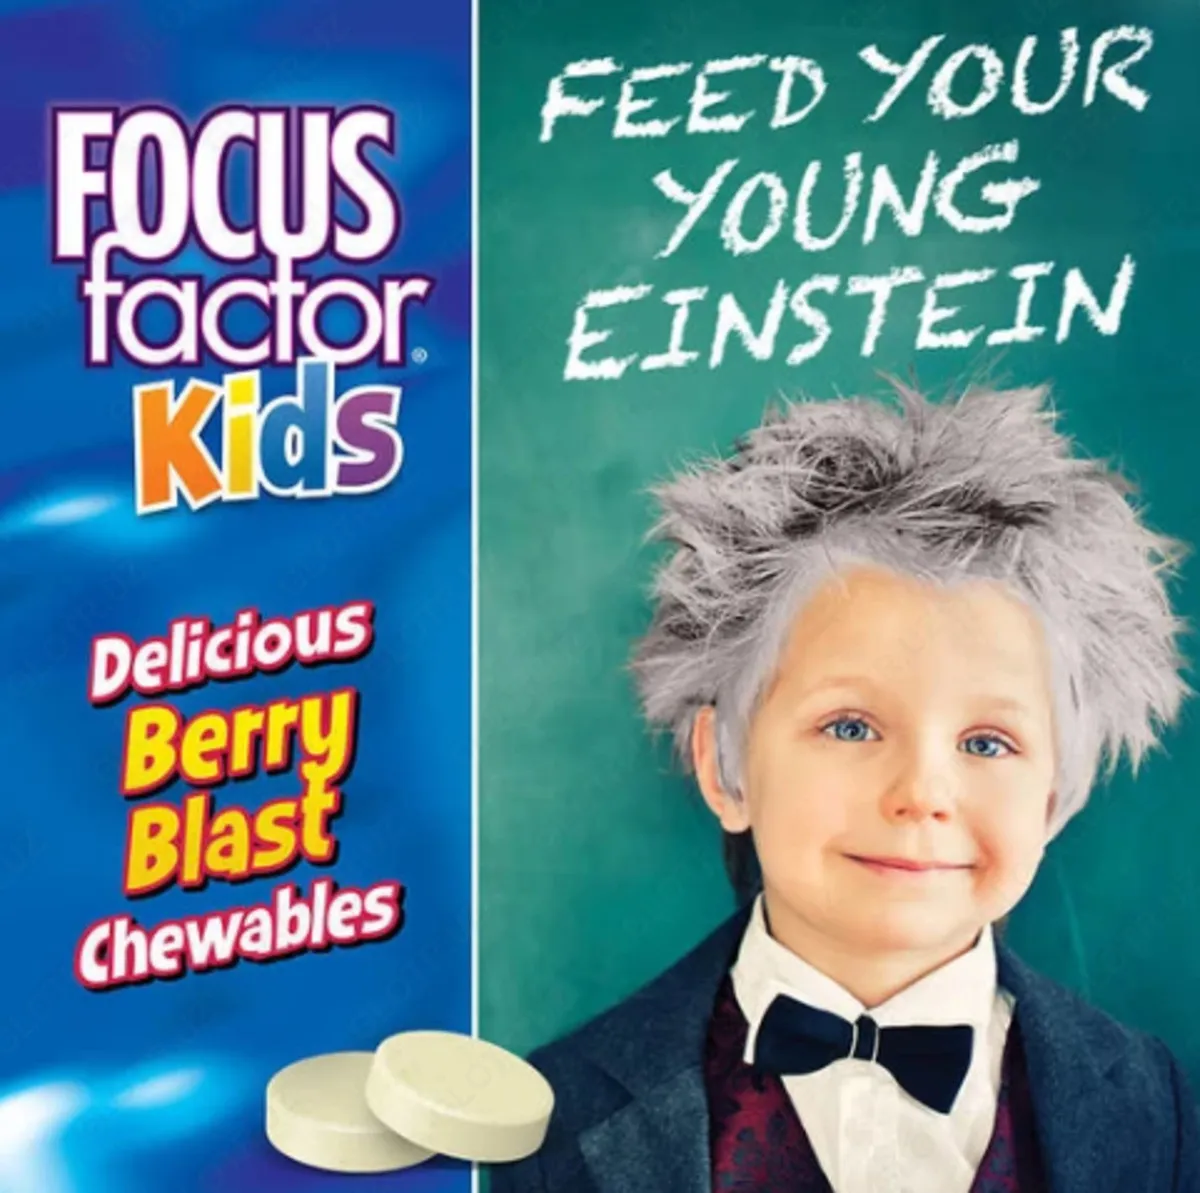 Витамины для детей Focus factor Kids (150 шт)#2